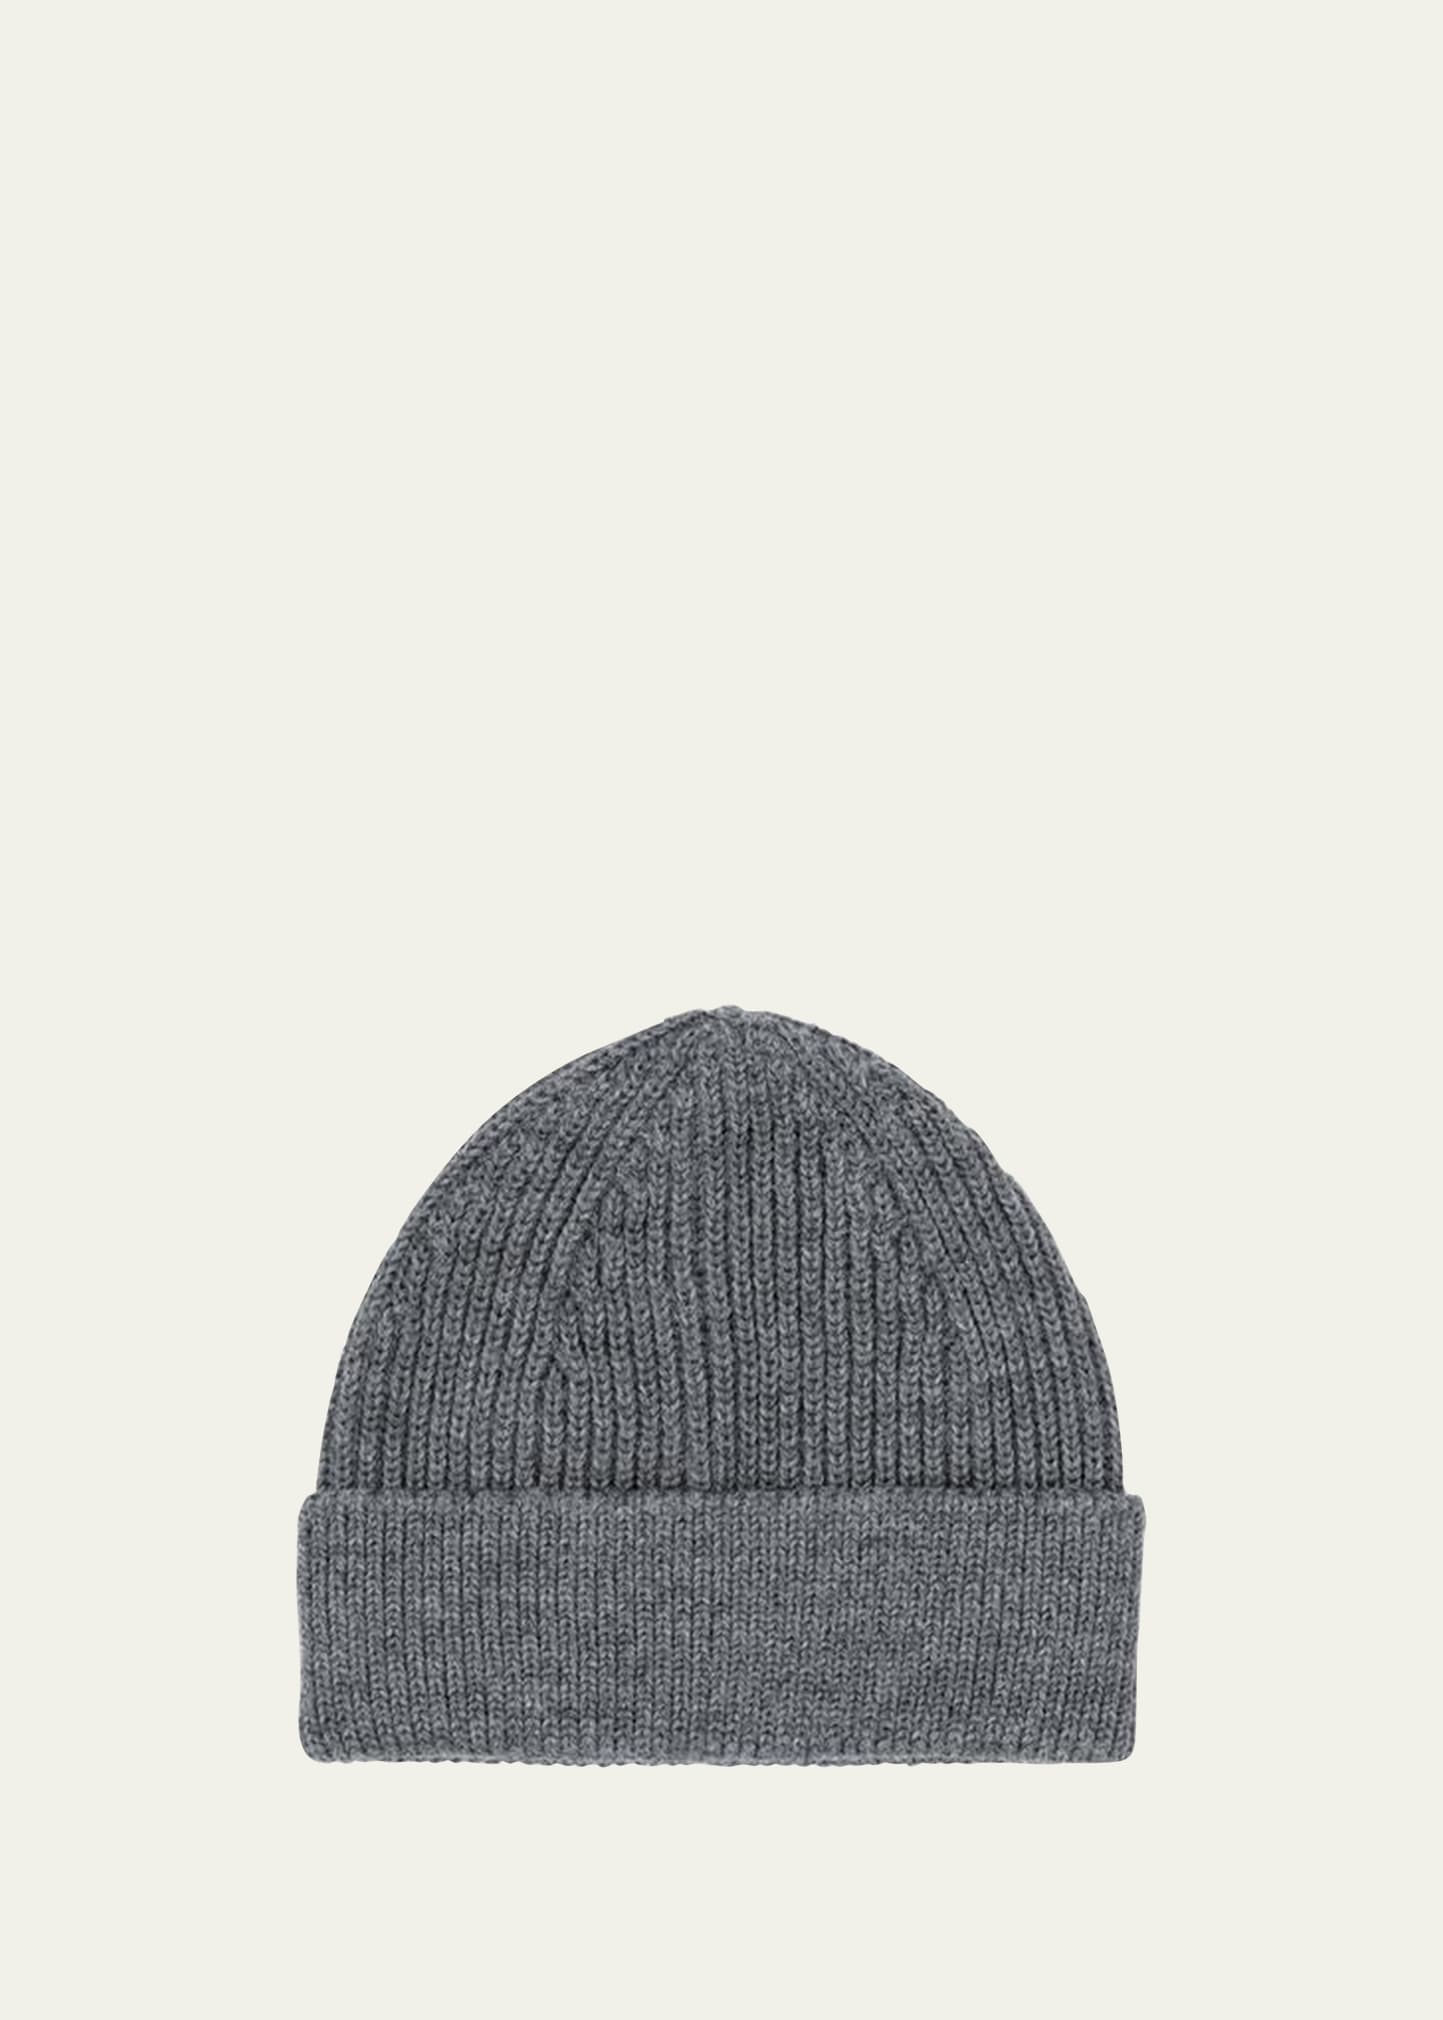 Men's Wool Medium Beanie Hat